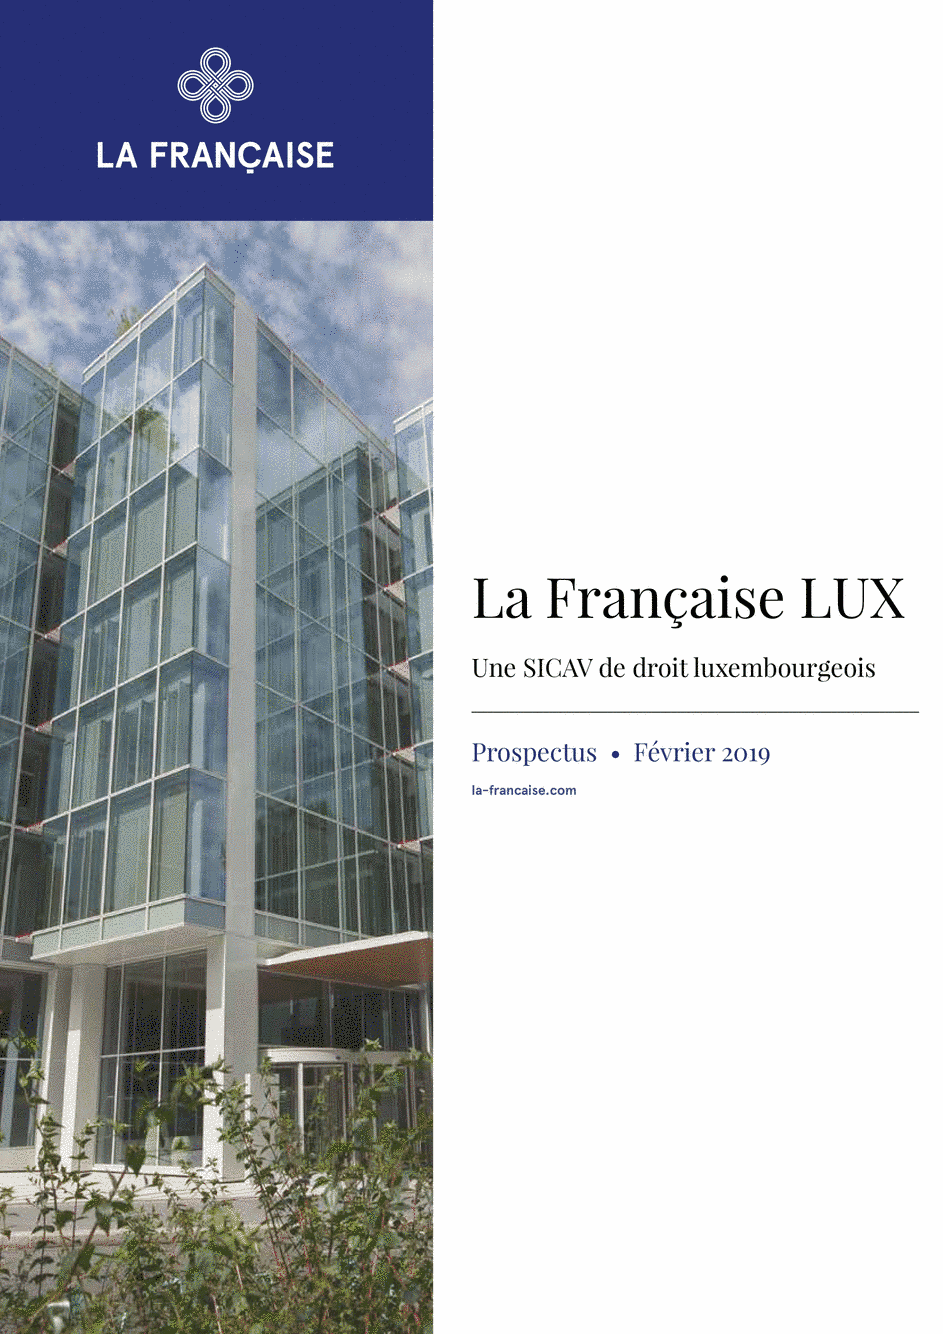 Prospectus LU1190460847 - 01/12/2018 - Français